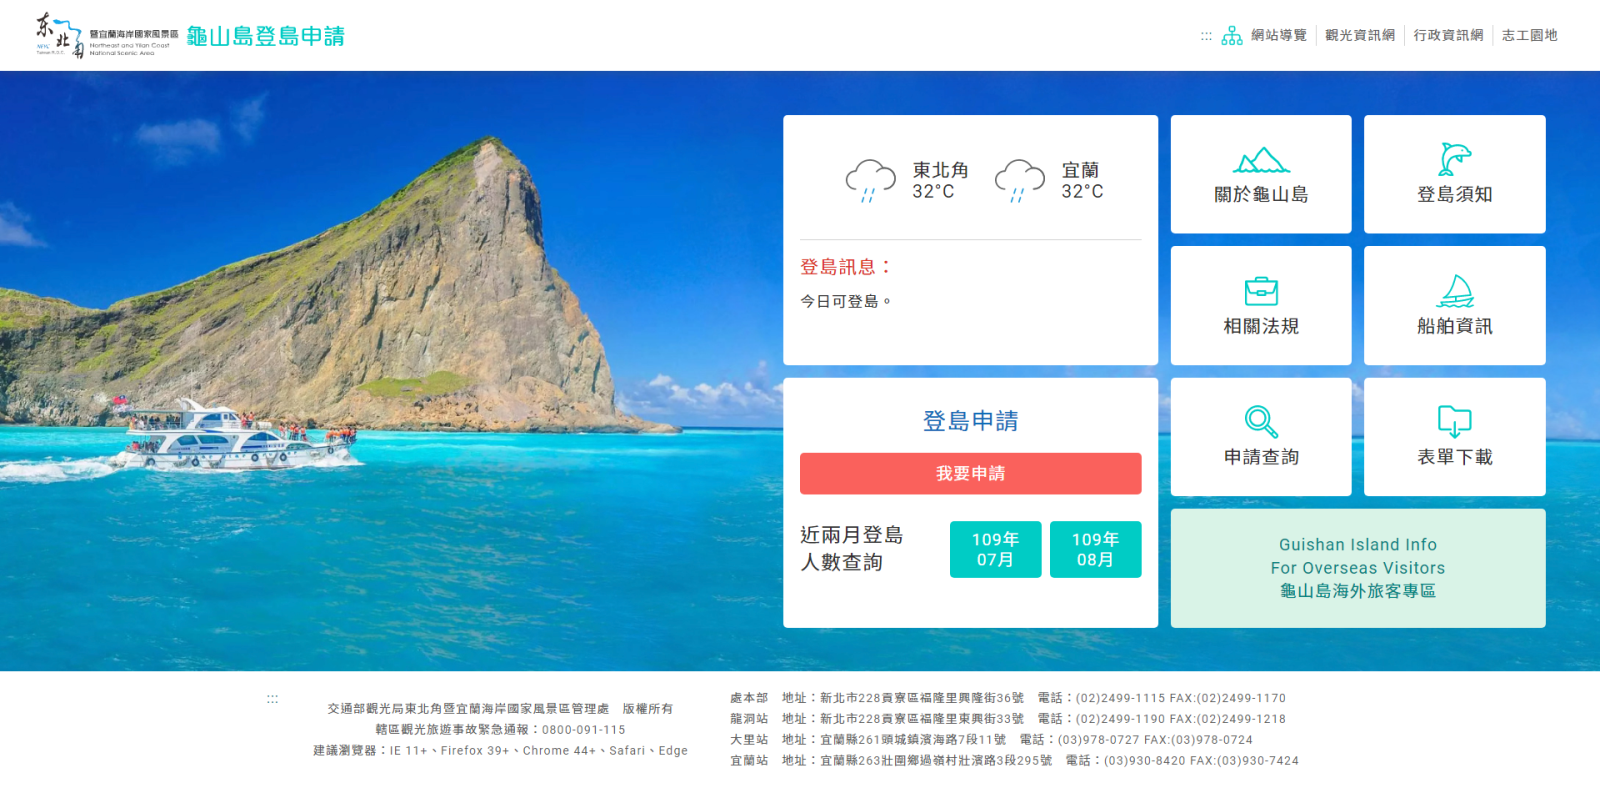 Versi baru dari sistem aplikasi pendaratan Pulau Guishan